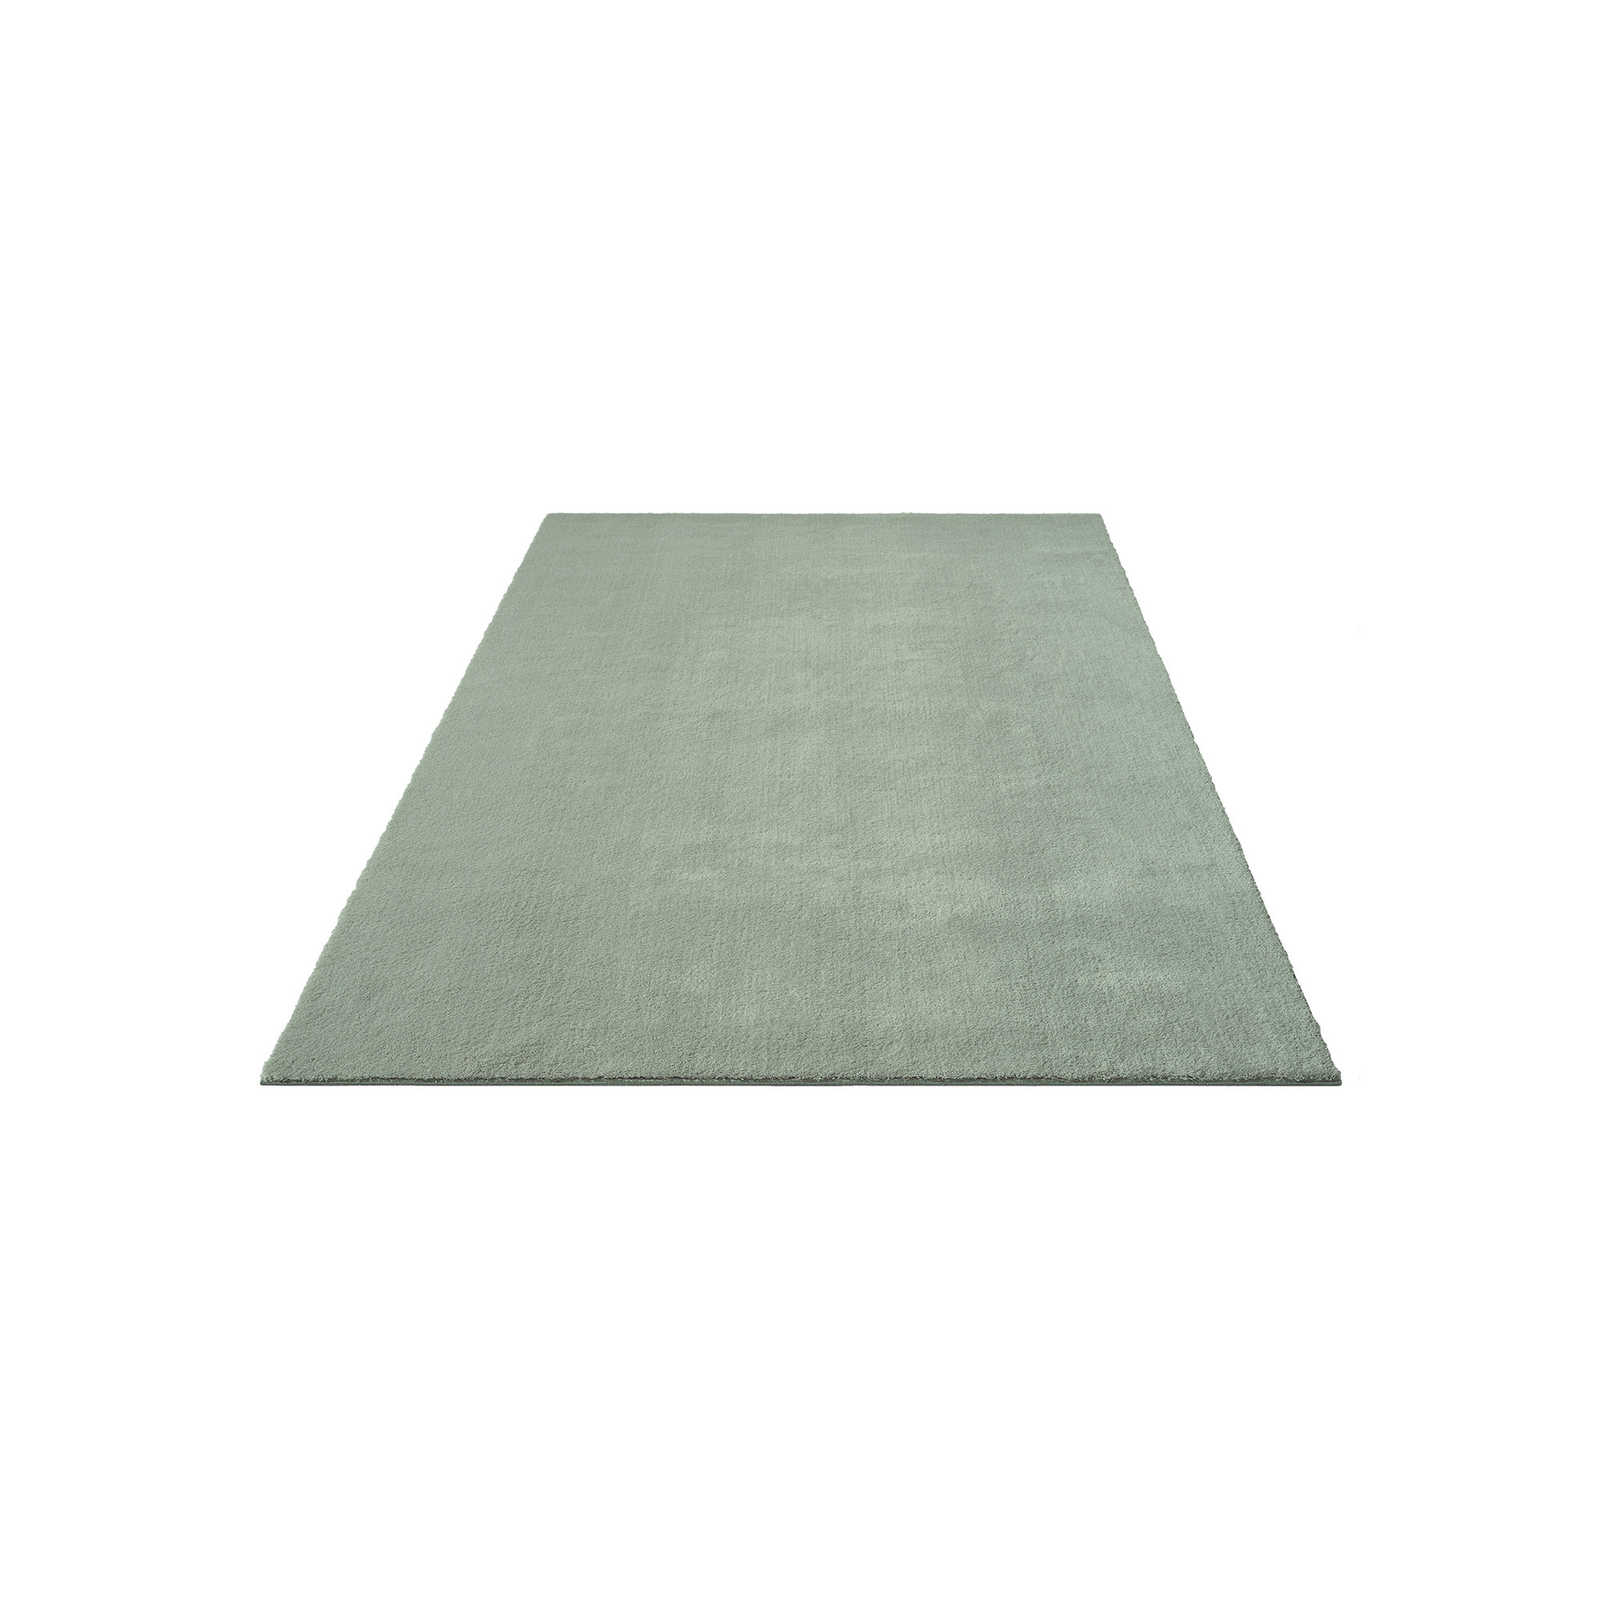 Sanfter Hochflor Teppich in Grün – 230 x 160 cm
